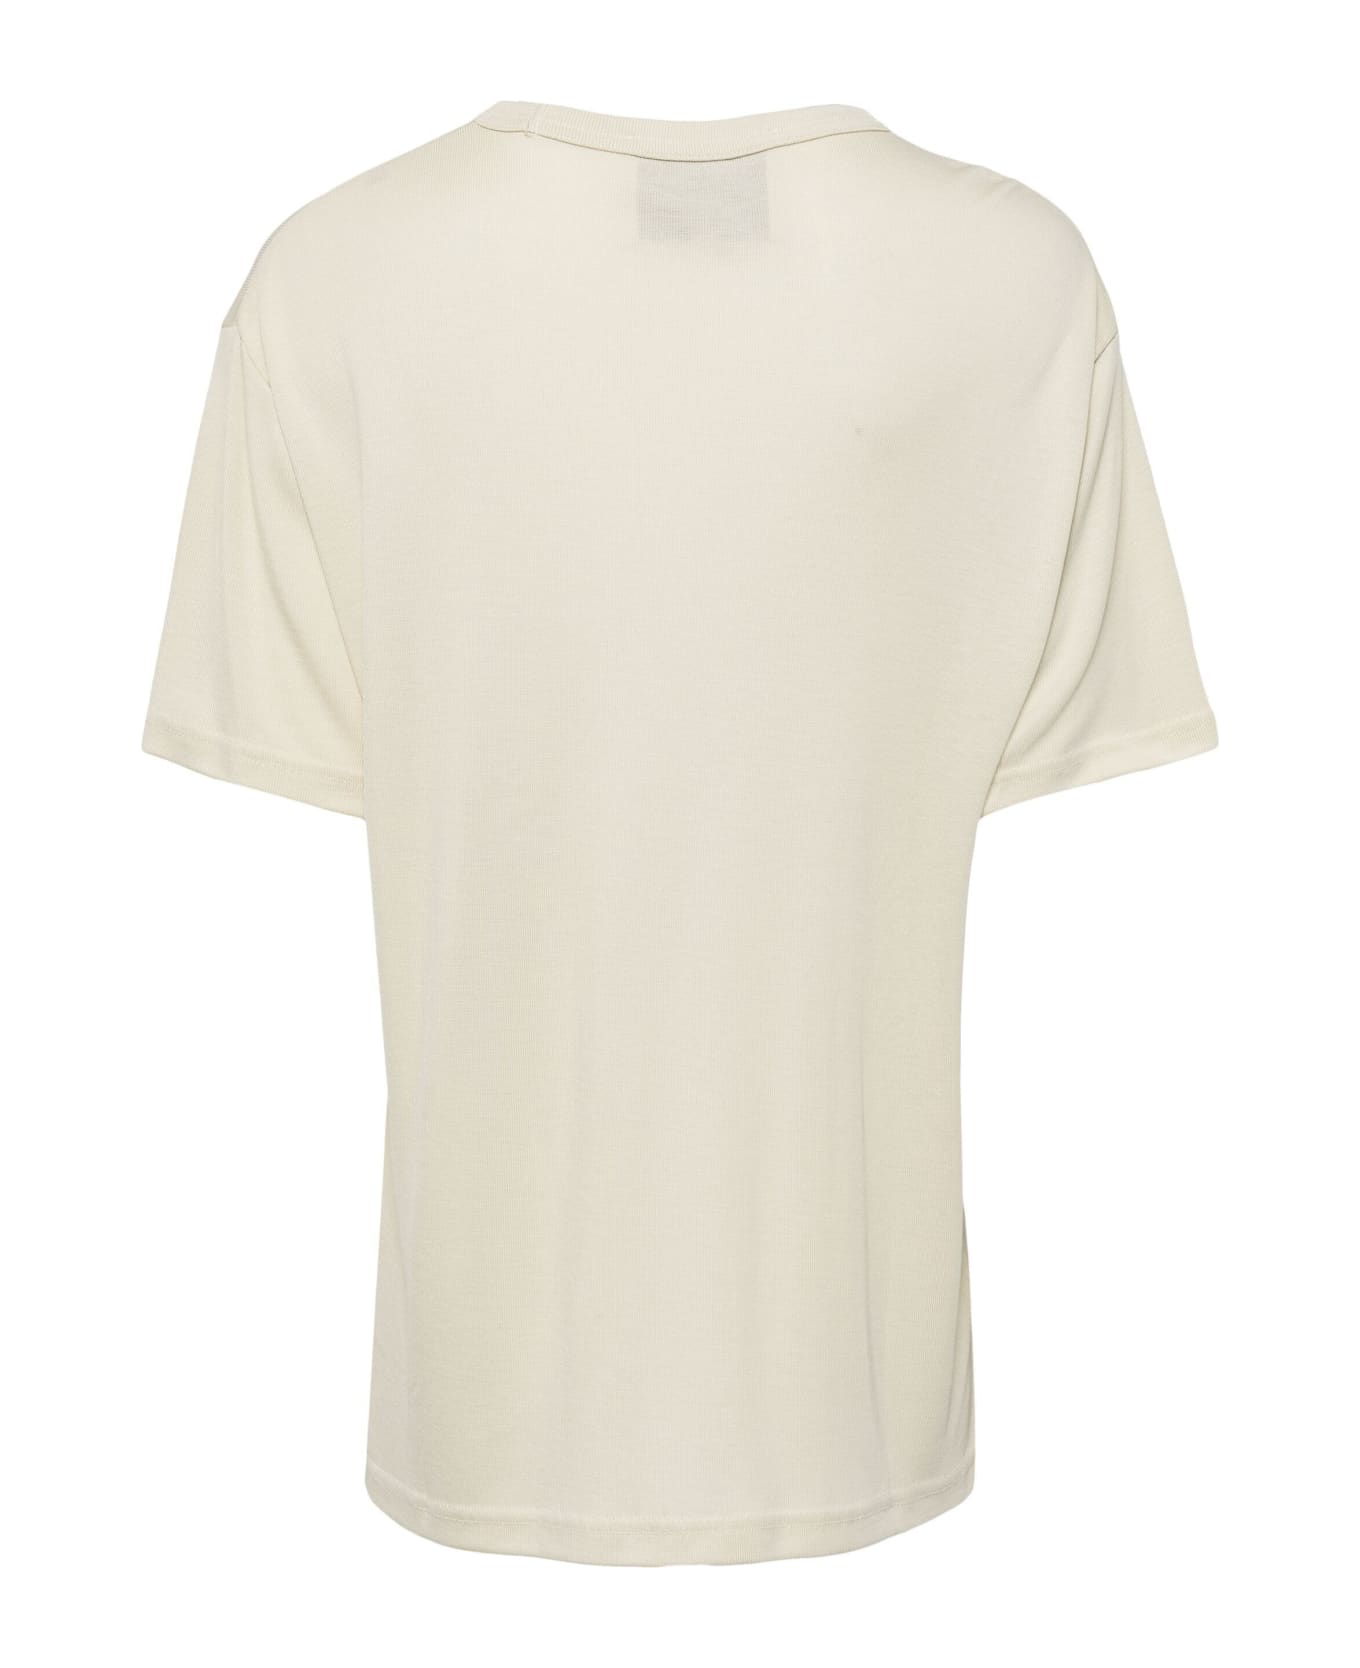 Studio Nicholson T Shirt - Parchment